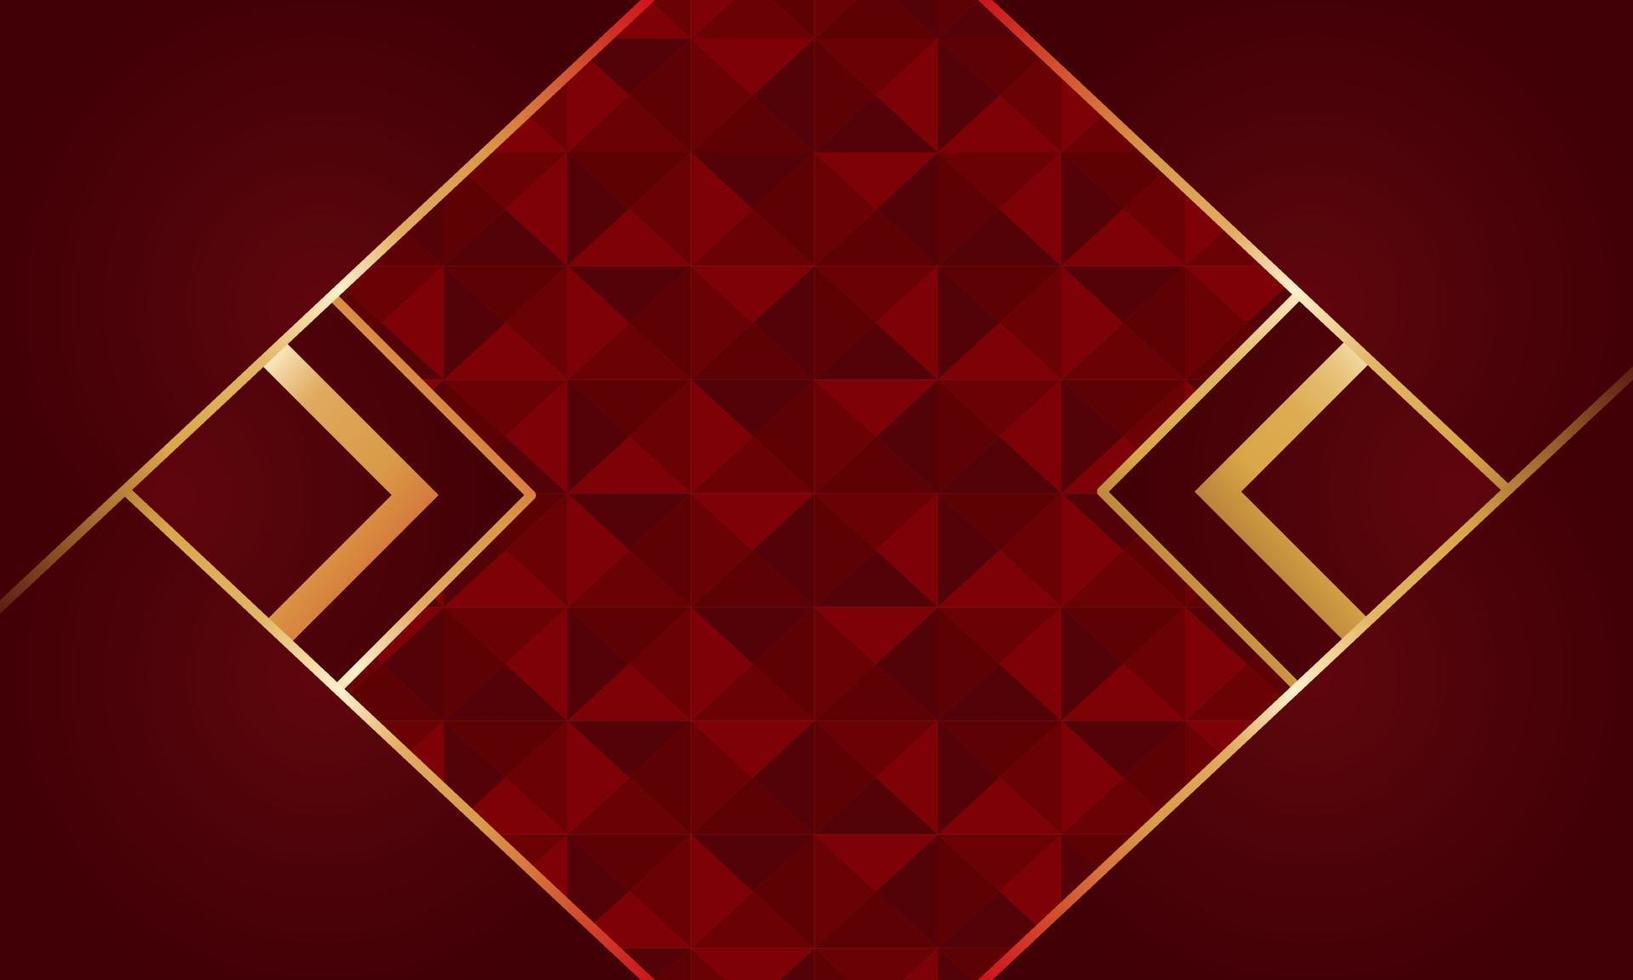 fondo rojo oscuro moderno con diseño de capa de superposición de efecto de textura vector